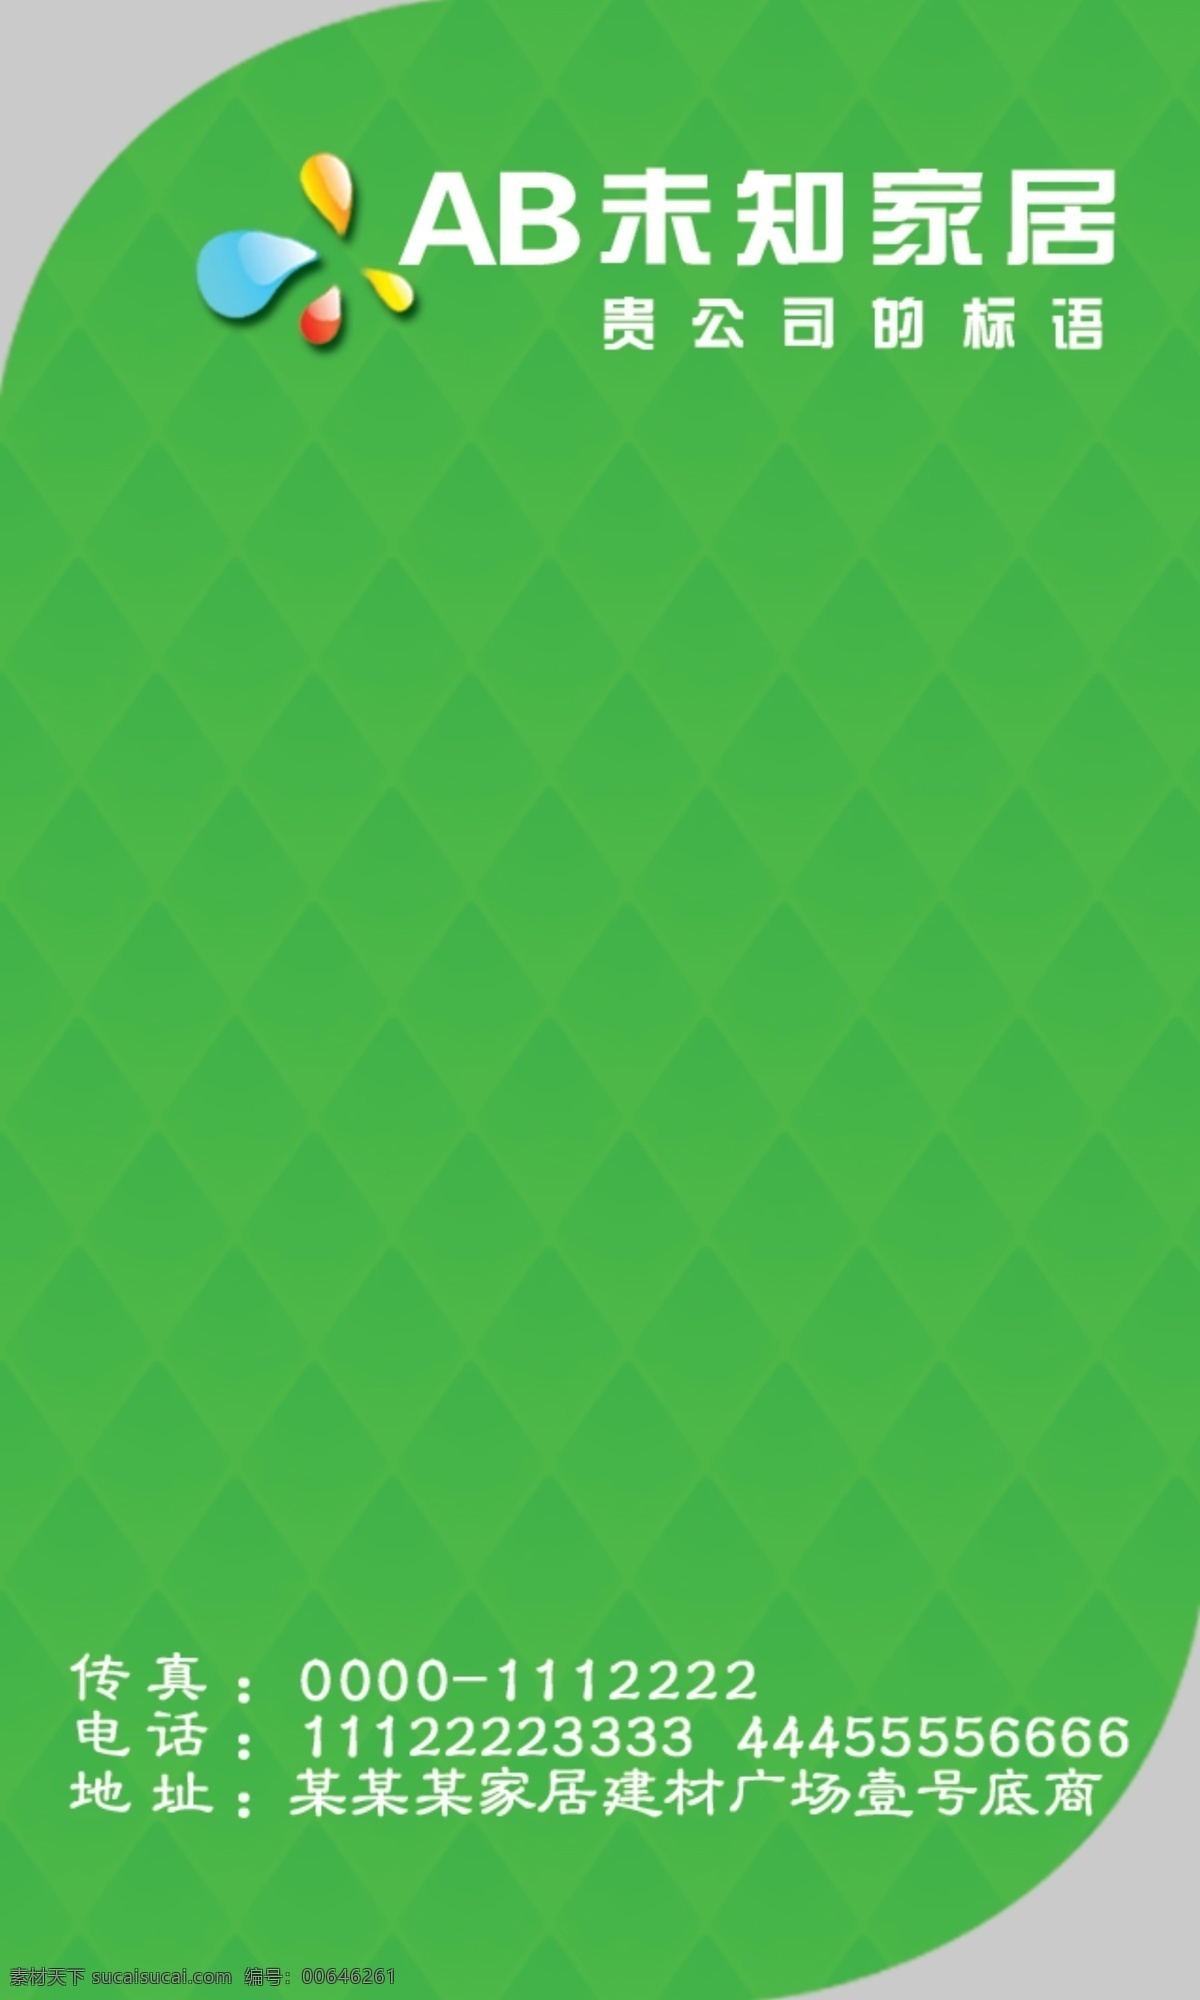 绿色 简单 底纹 不规则 通用 模板 白色 菱形块 水滴 不规则形状 大气 时尚 家居 名片模板 名片设计 分层 高清 名片类 名片卡片